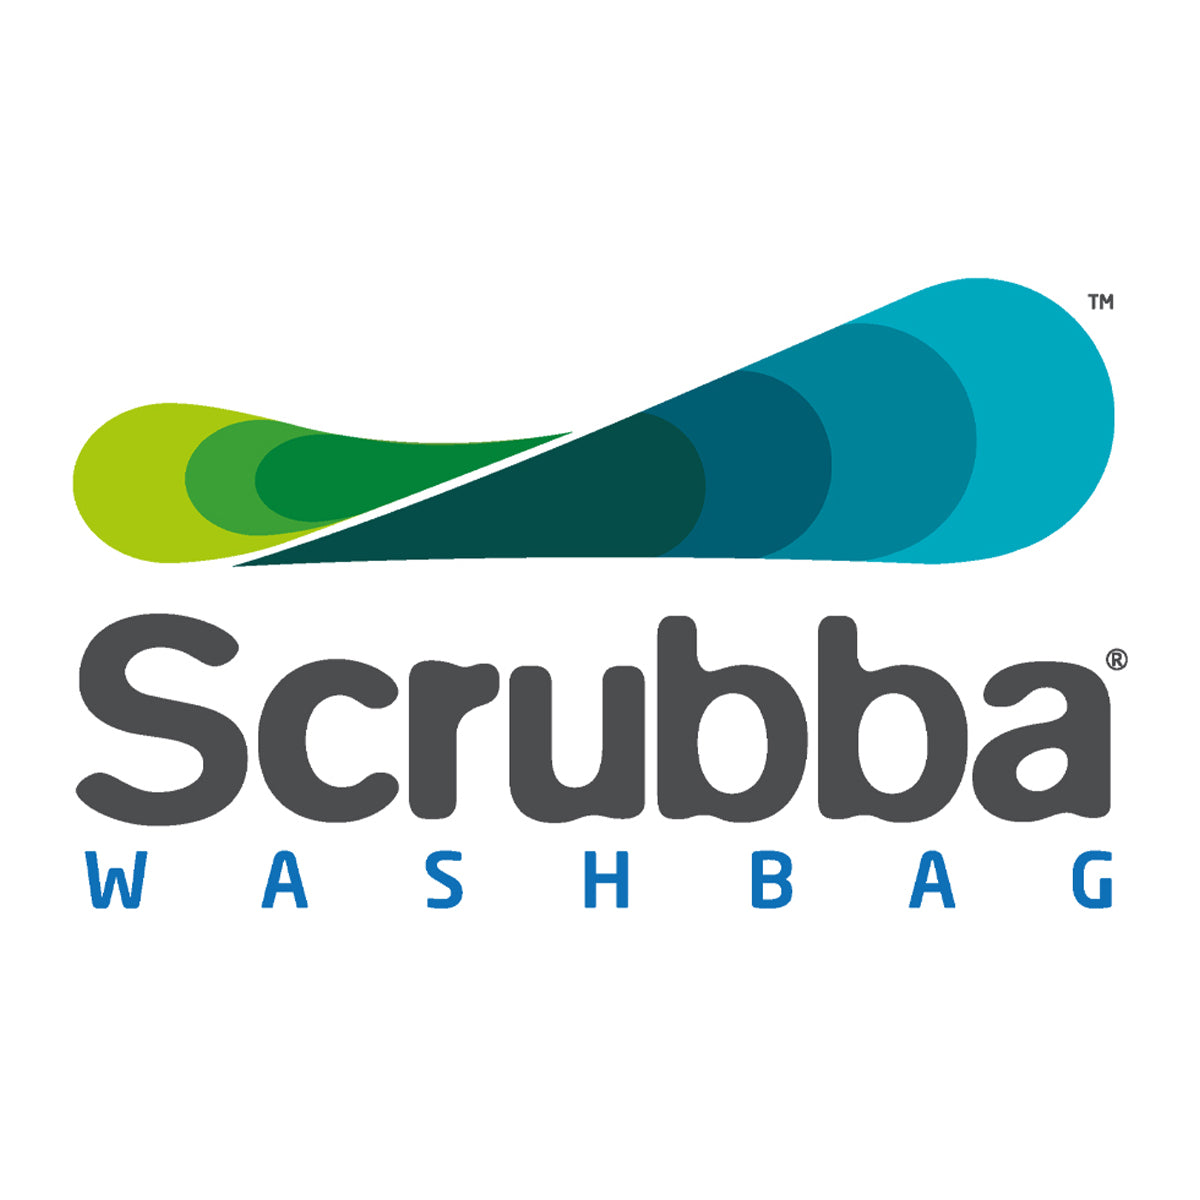 The Scrubba